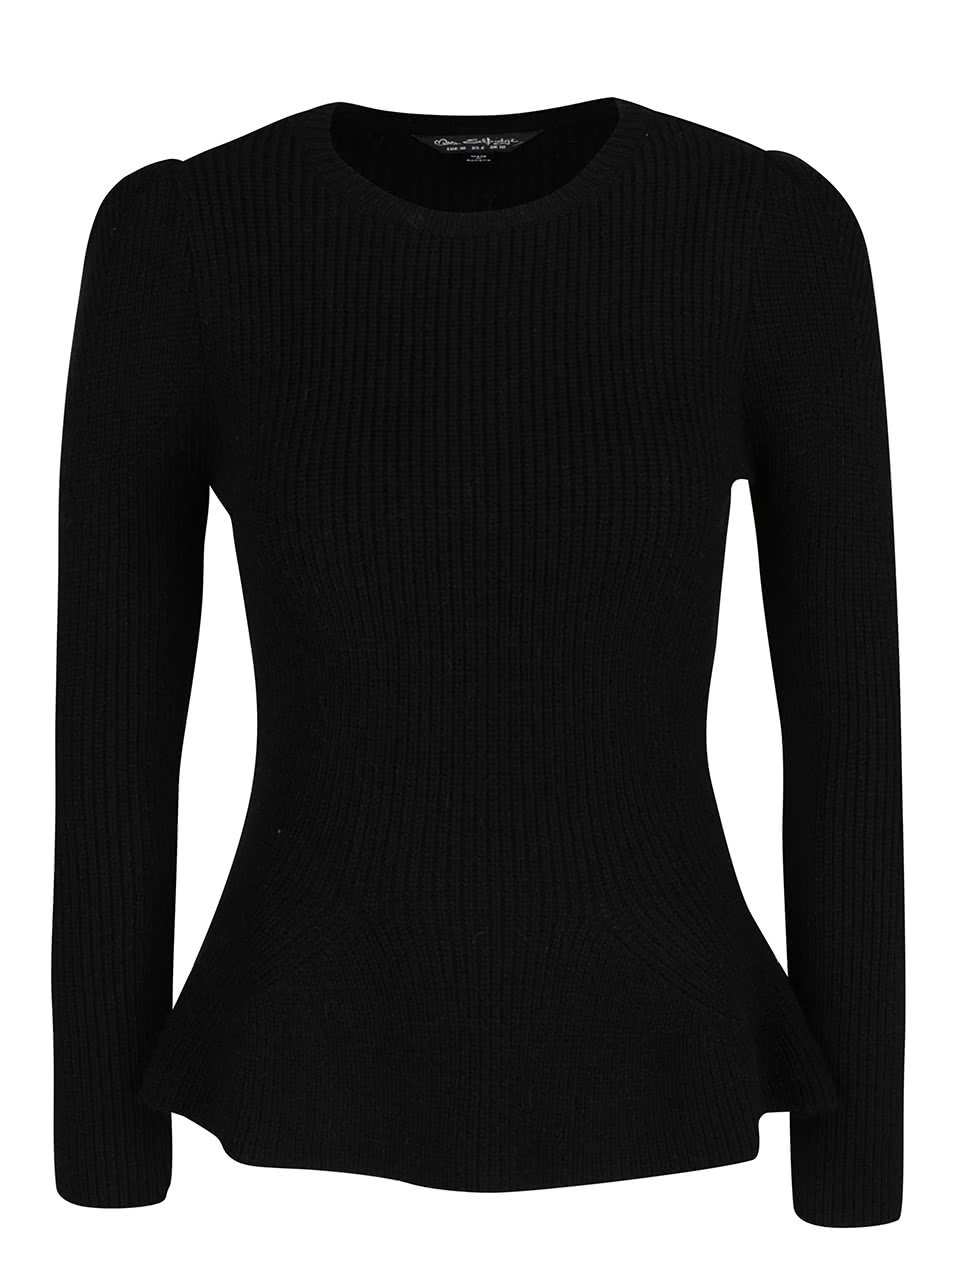 Černý svetr s rozšířenou spodní částí Miss Selfridge